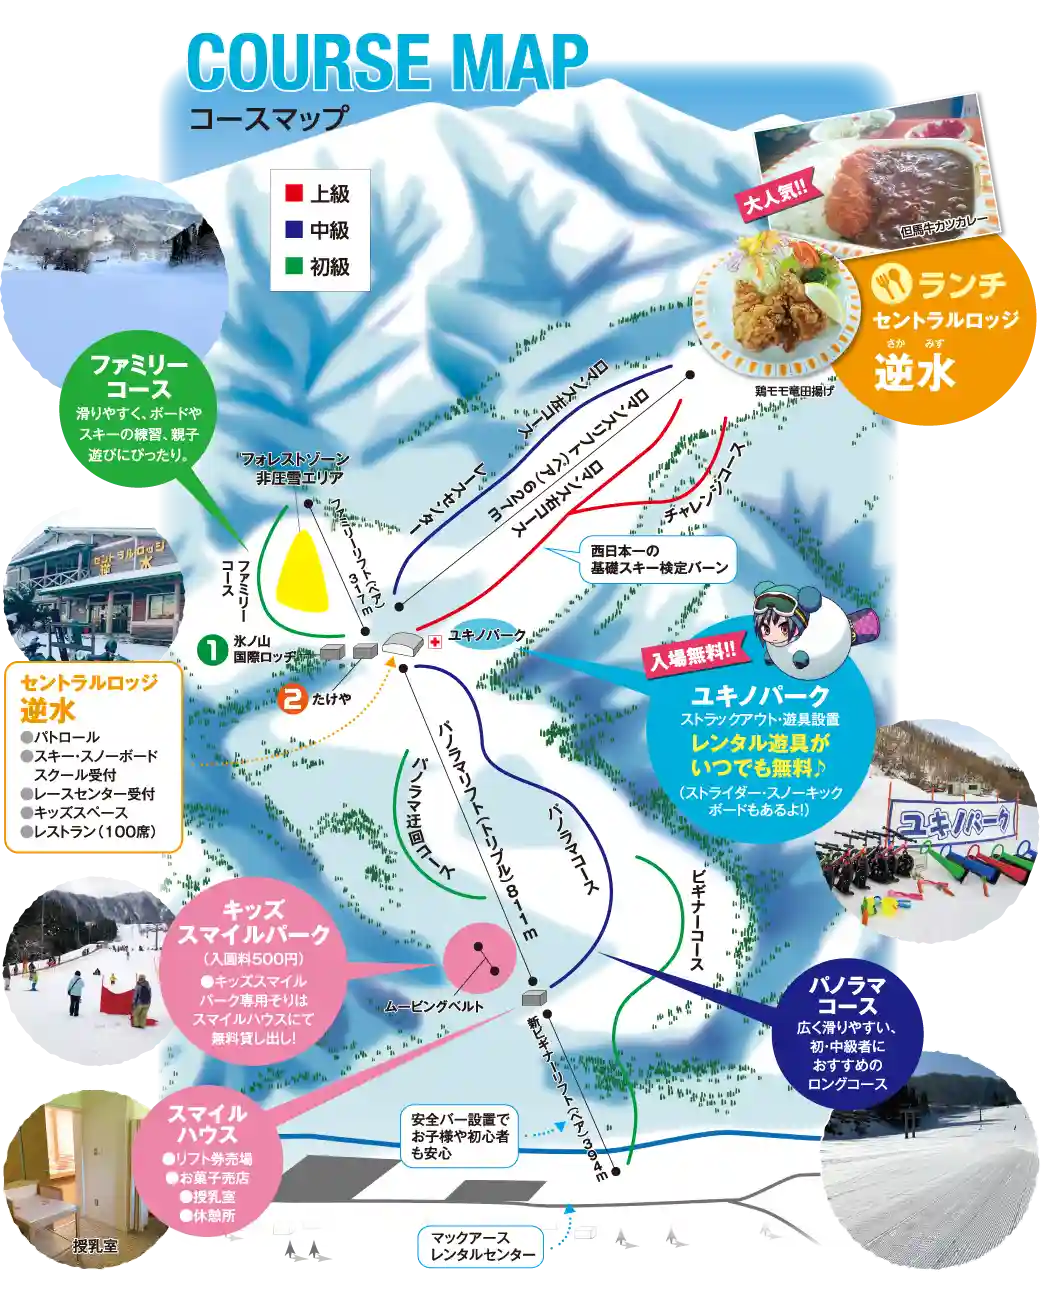 효우노산 국제 스키장